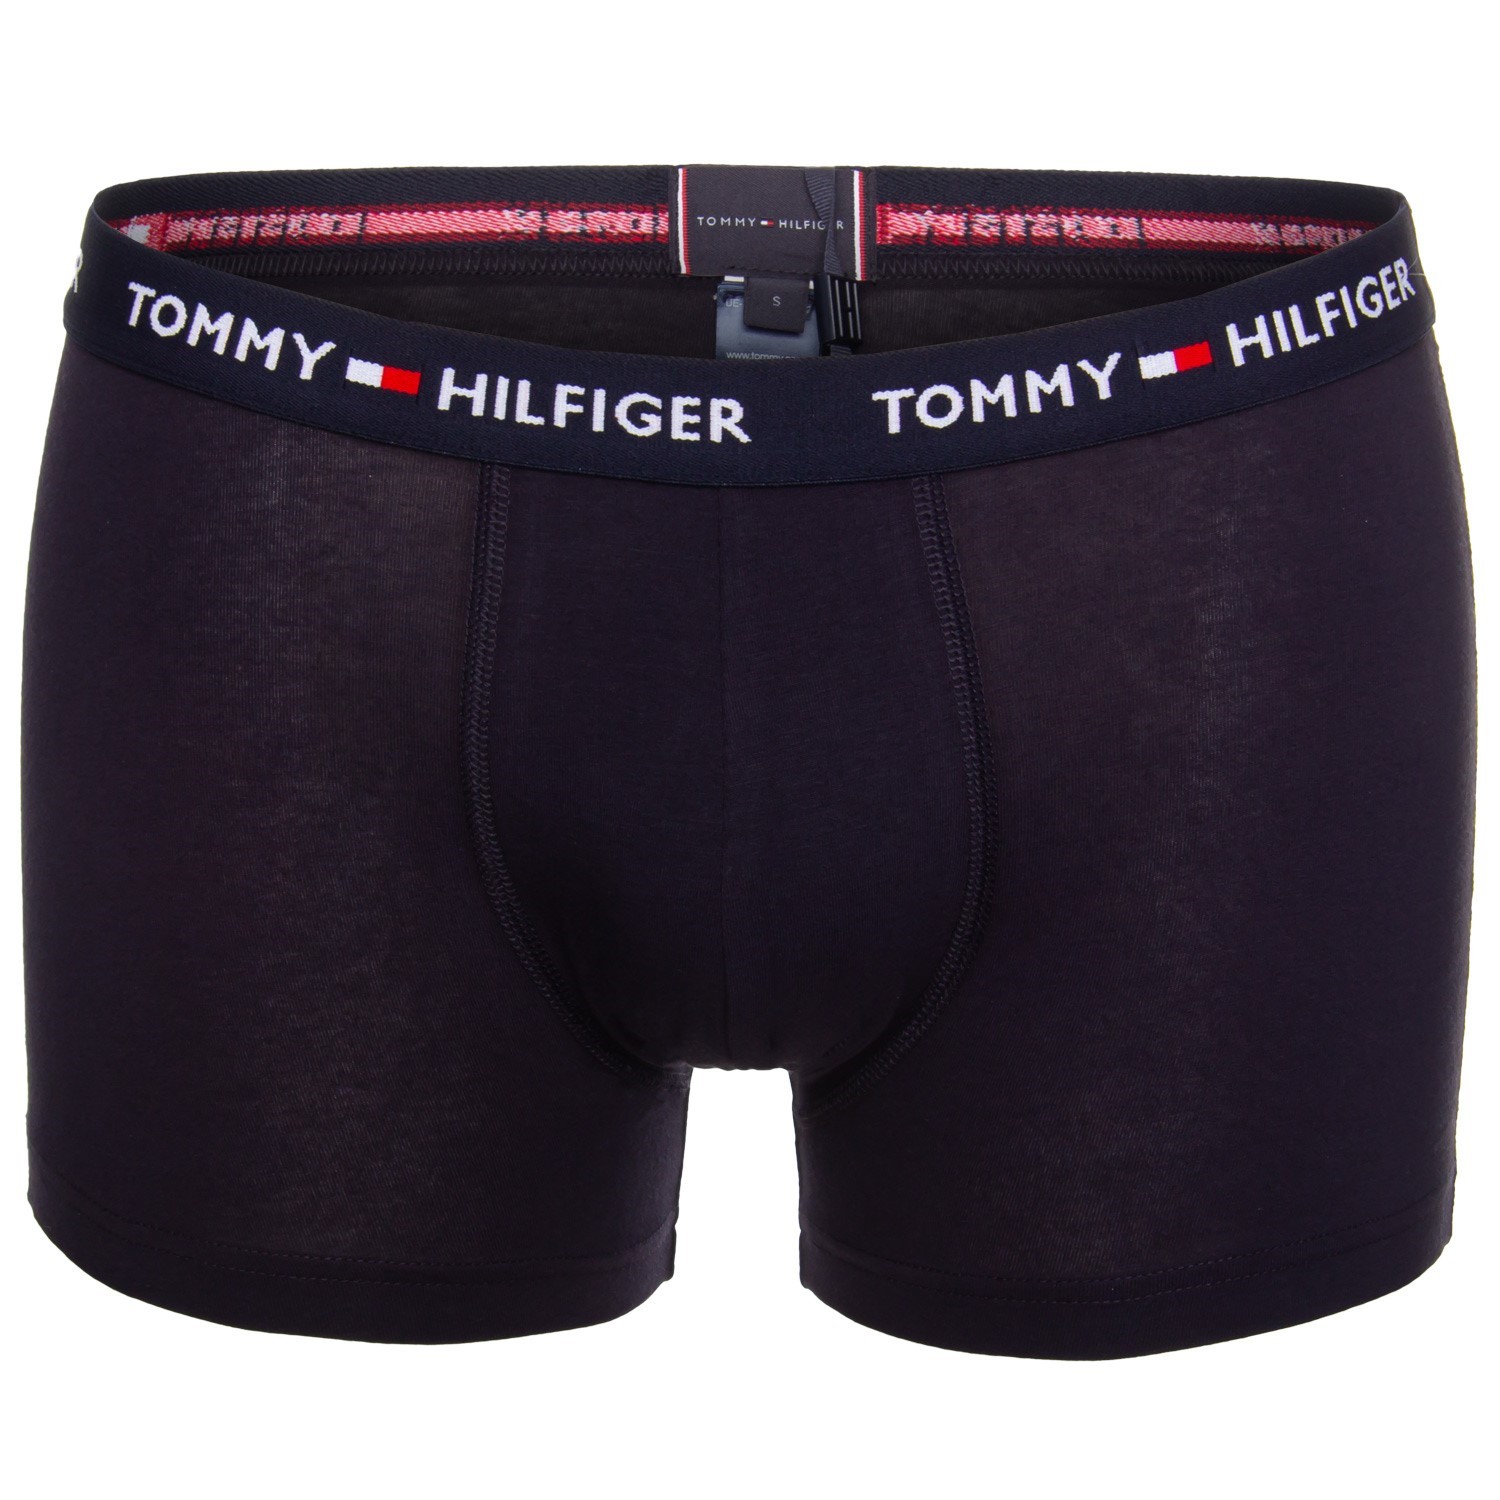 tommy hilfiger trunk underwear